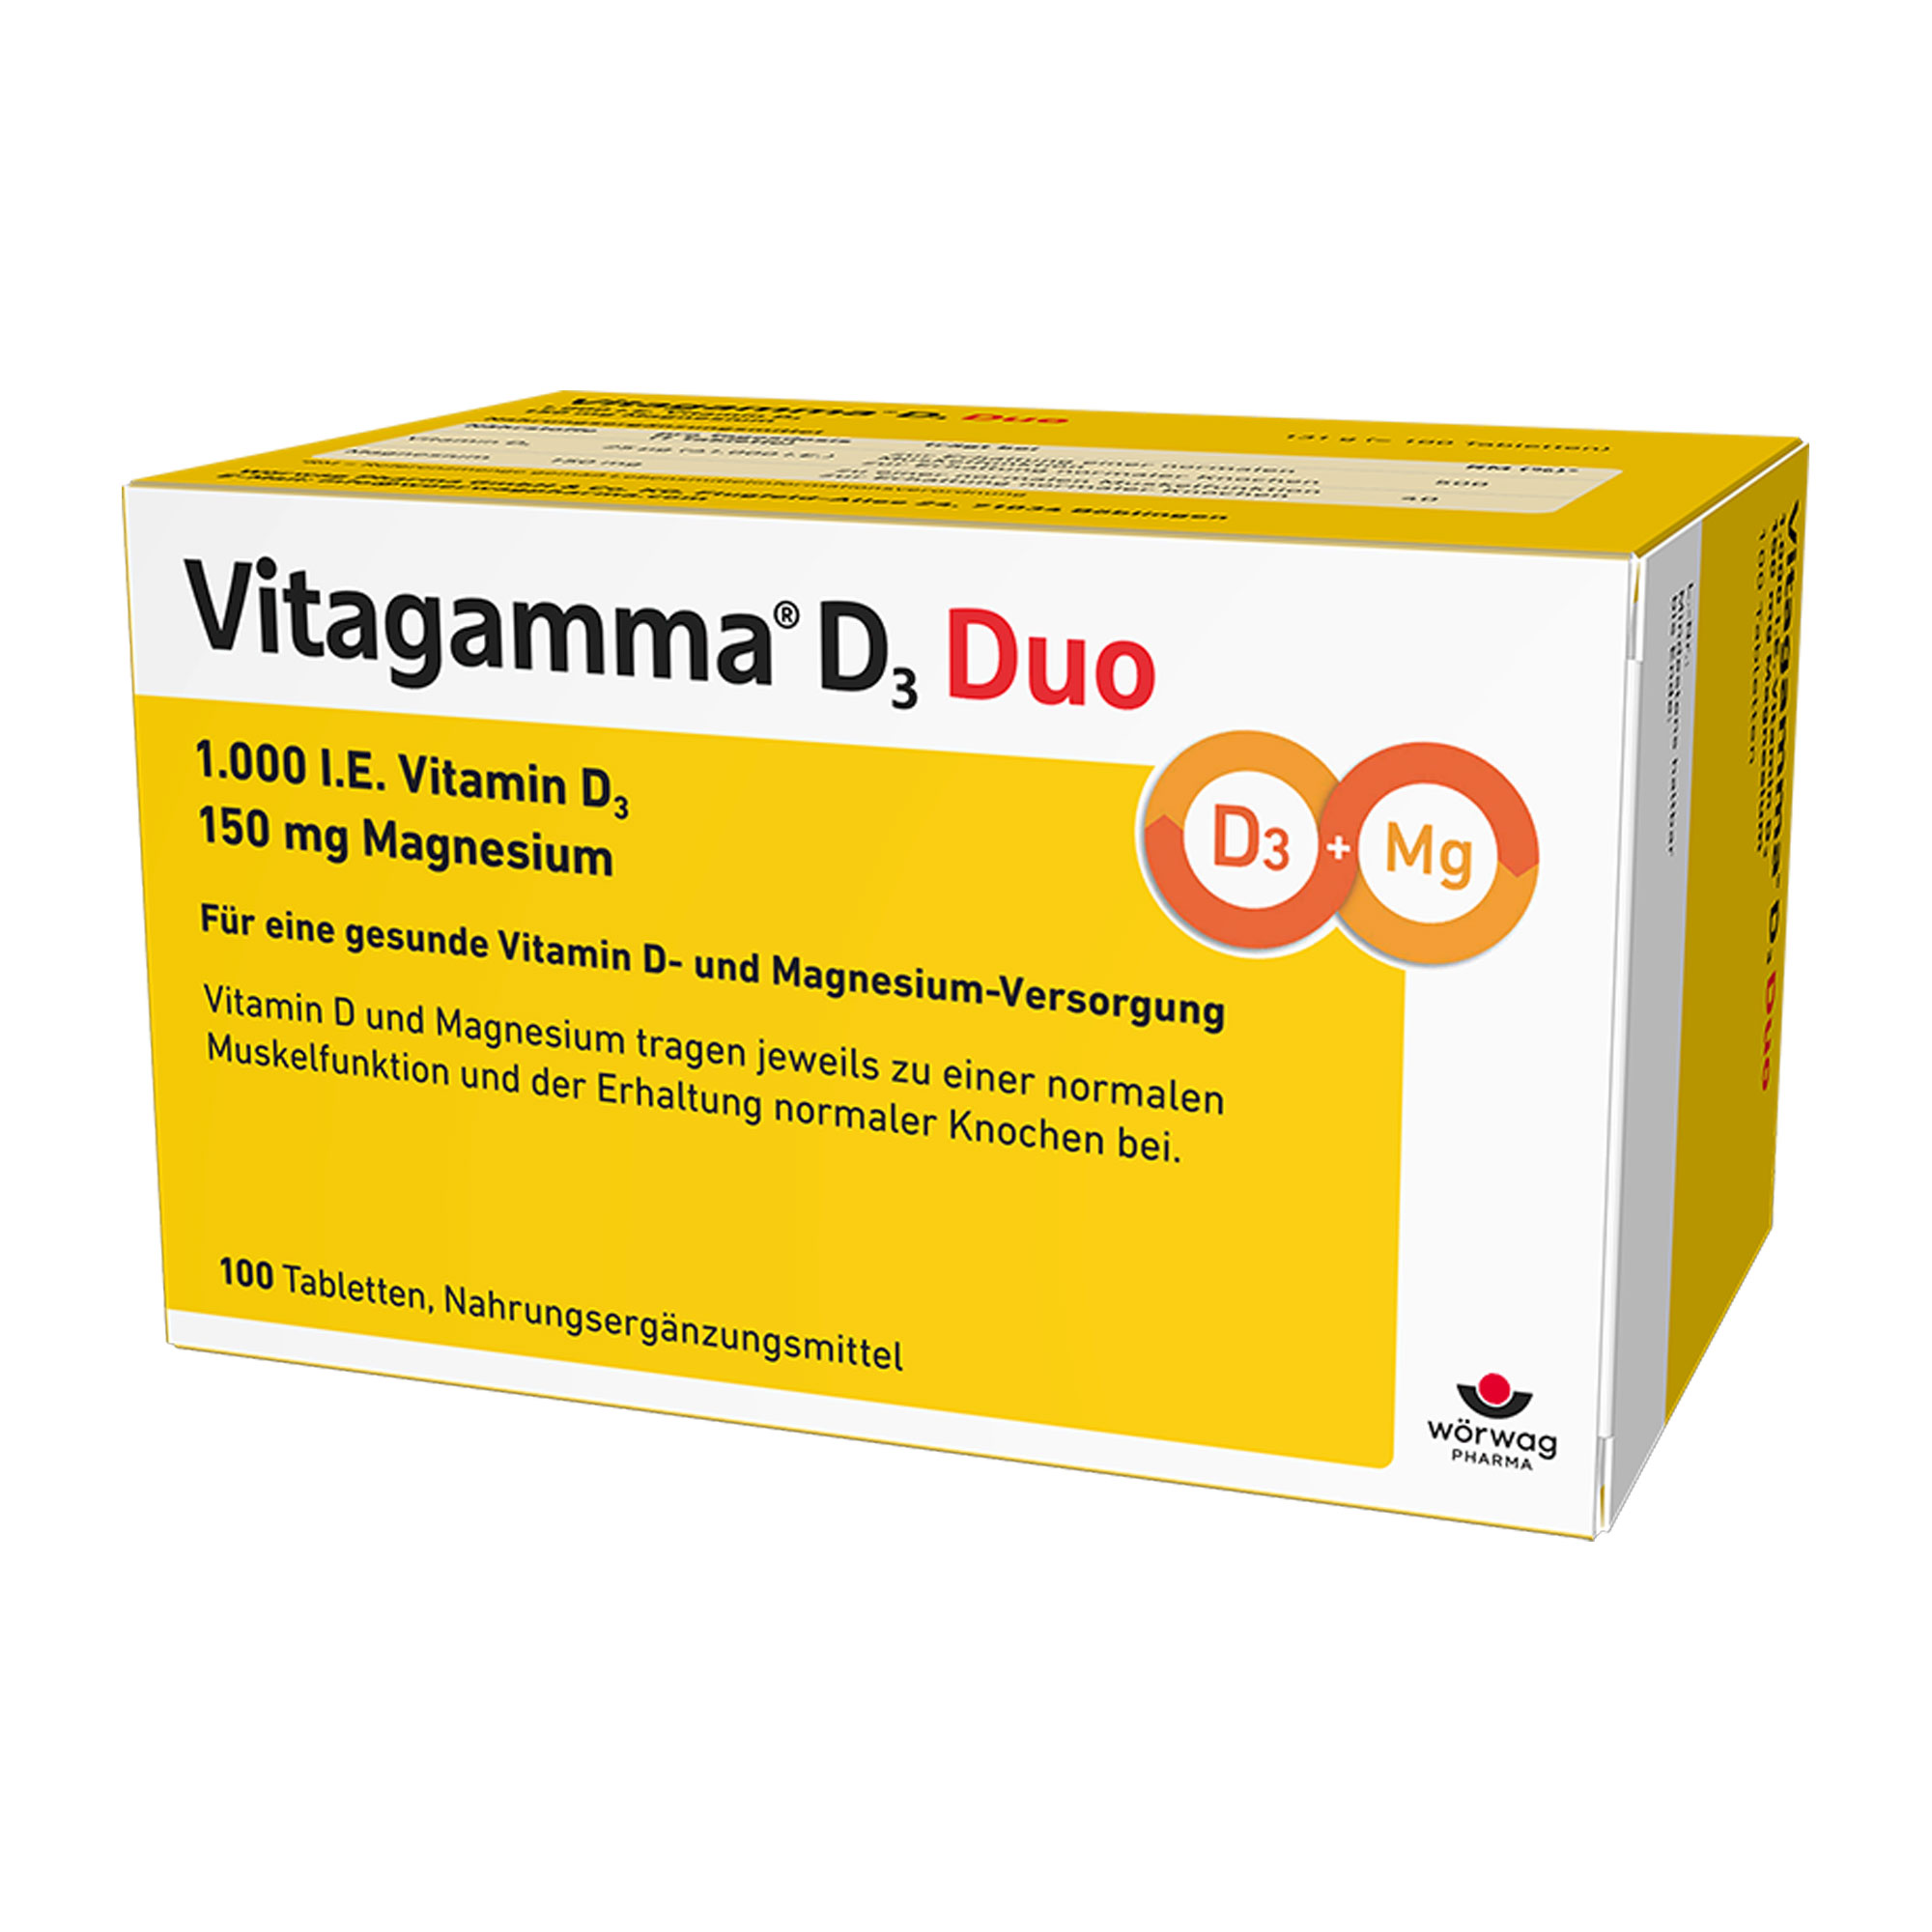 Nahrungsergänzungsmittel mit Vitamin D und Magnesium.